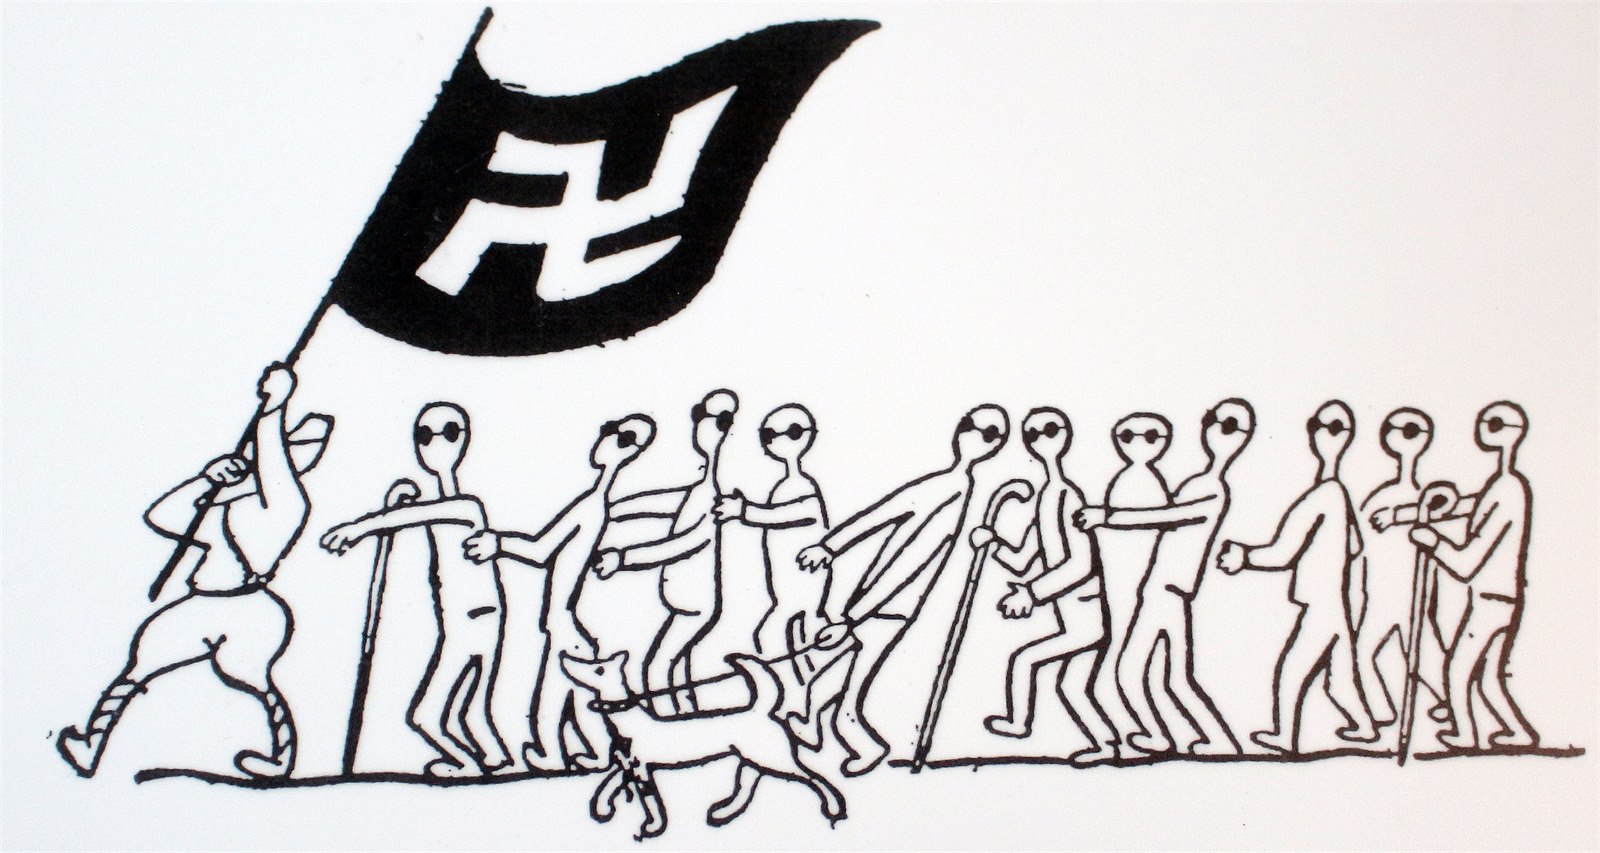 Mlýn v Hronově vystavuje v době festivalu Čapkovy politické kresby